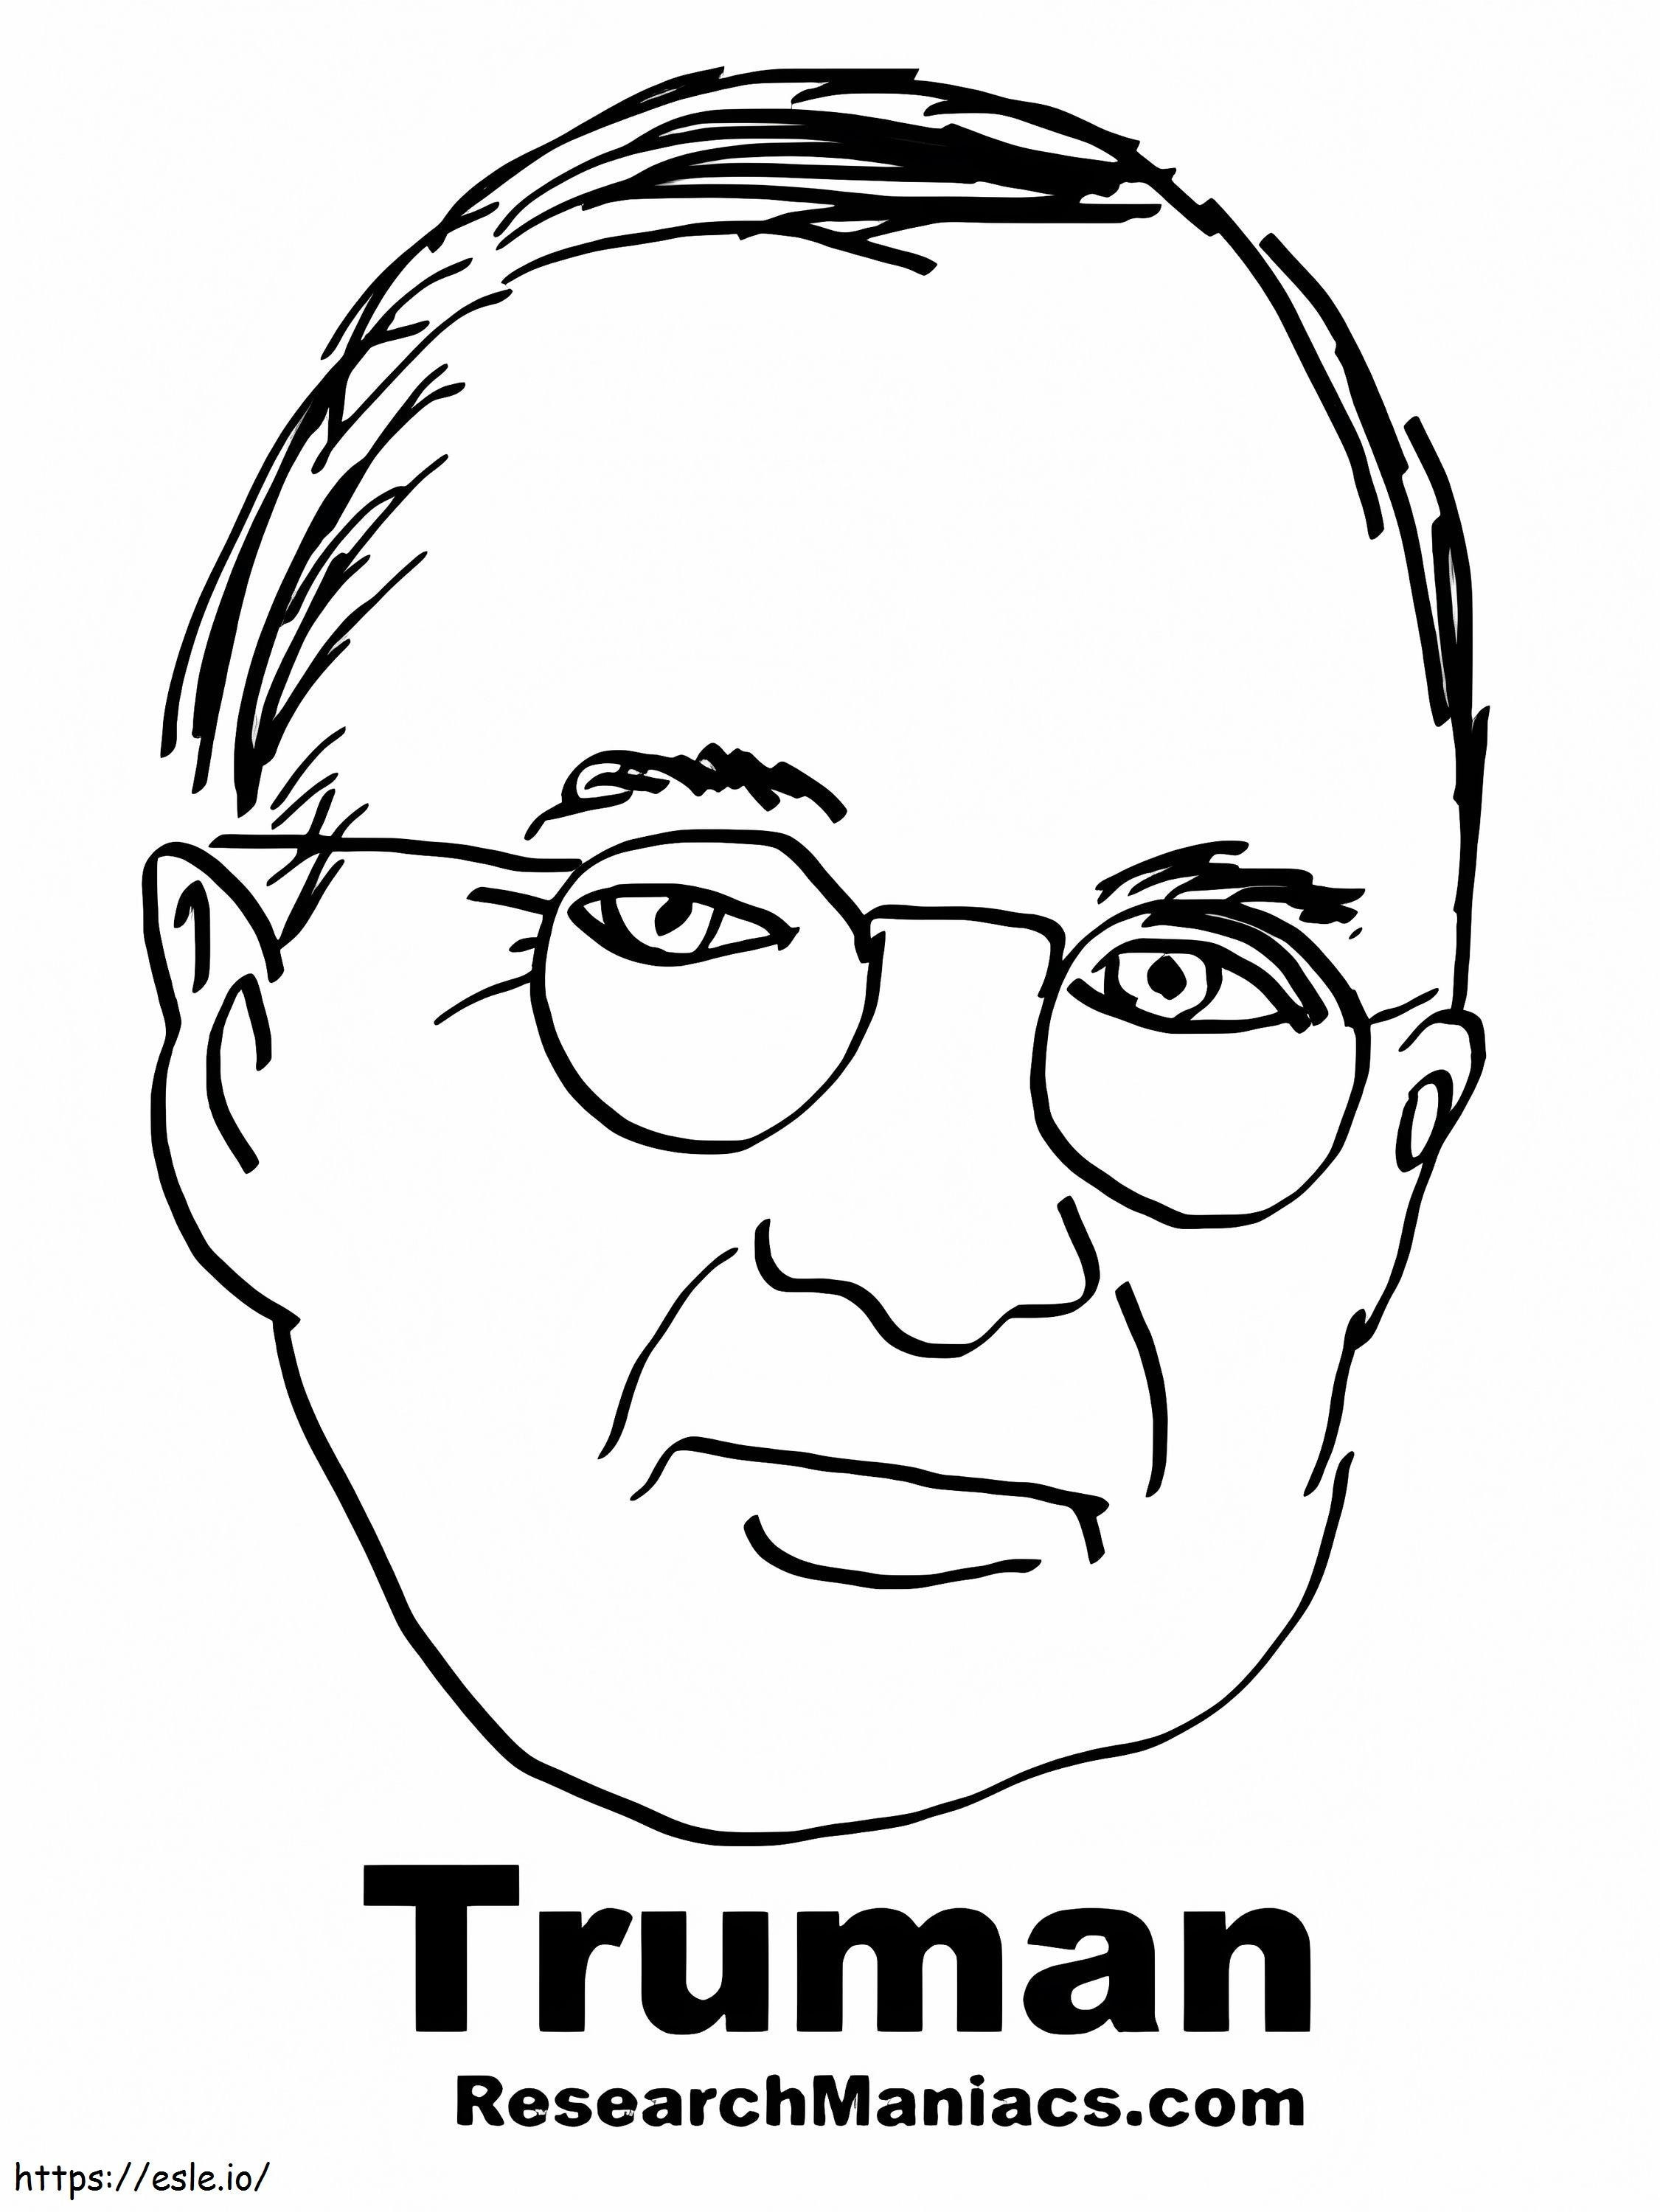 Coloriage Harry S. Truman imprimable gratuitement à imprimer dessin